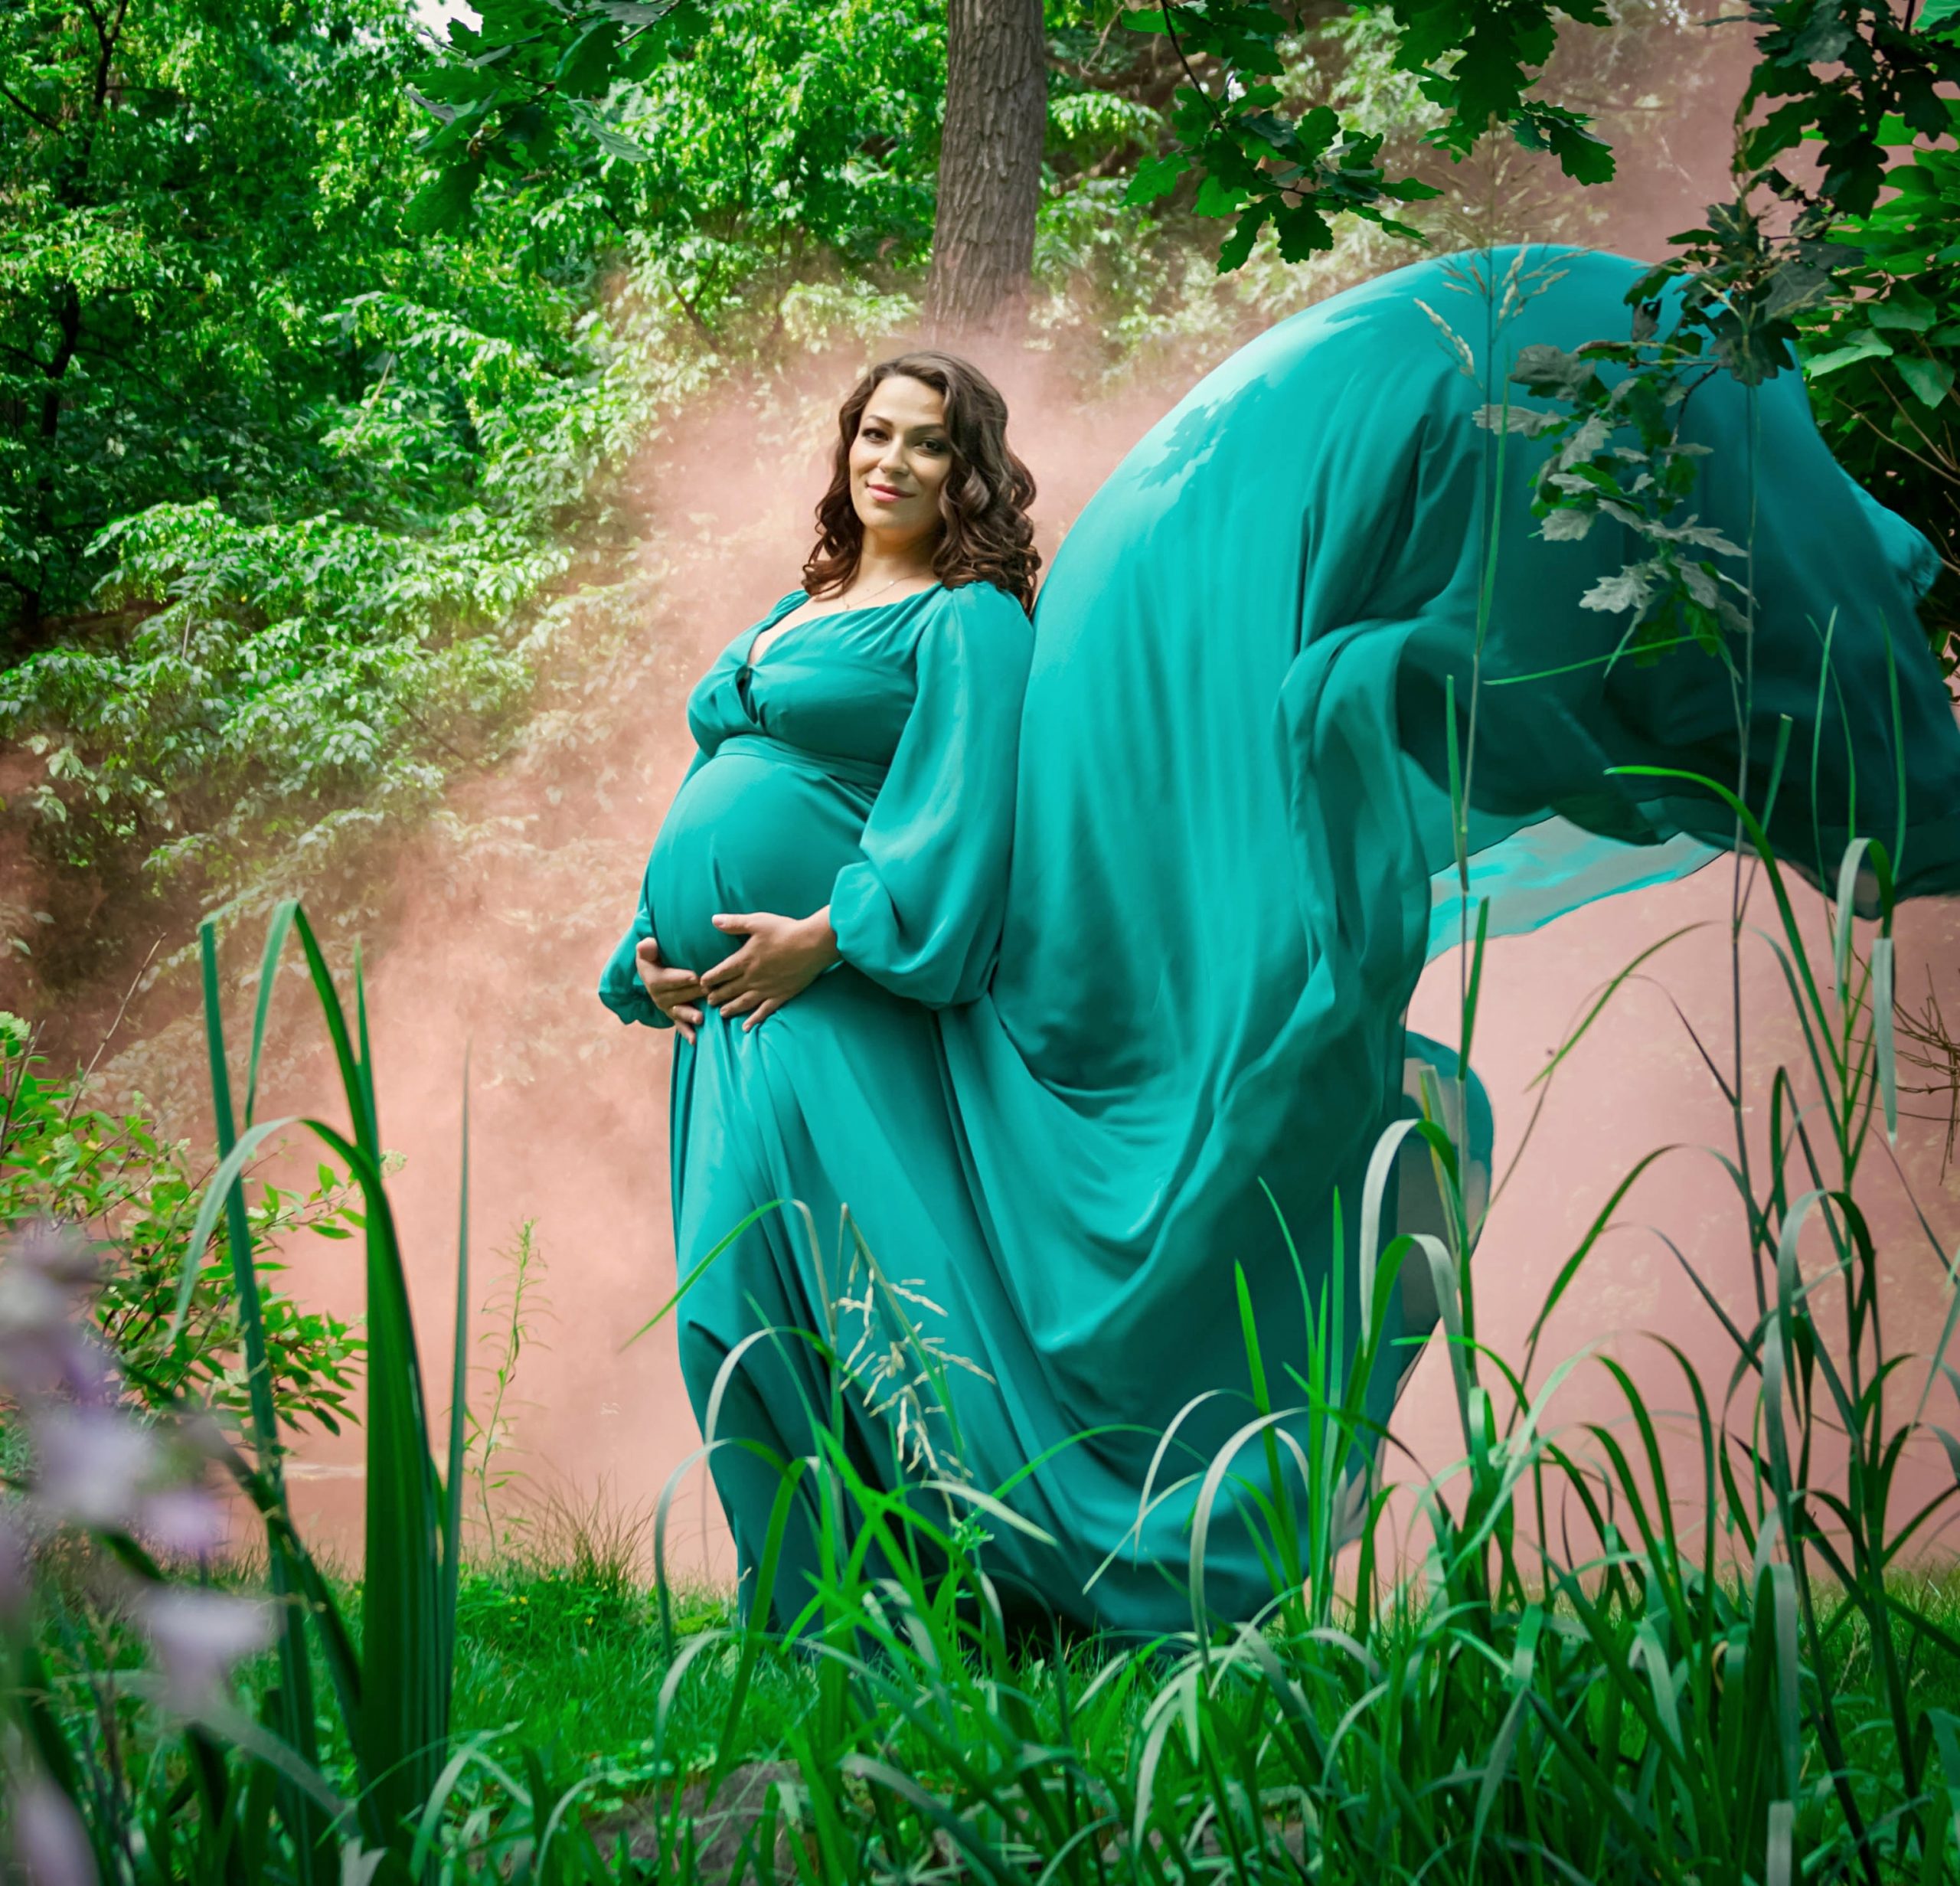 Зеленое платье со шлейфом для беременных прокат